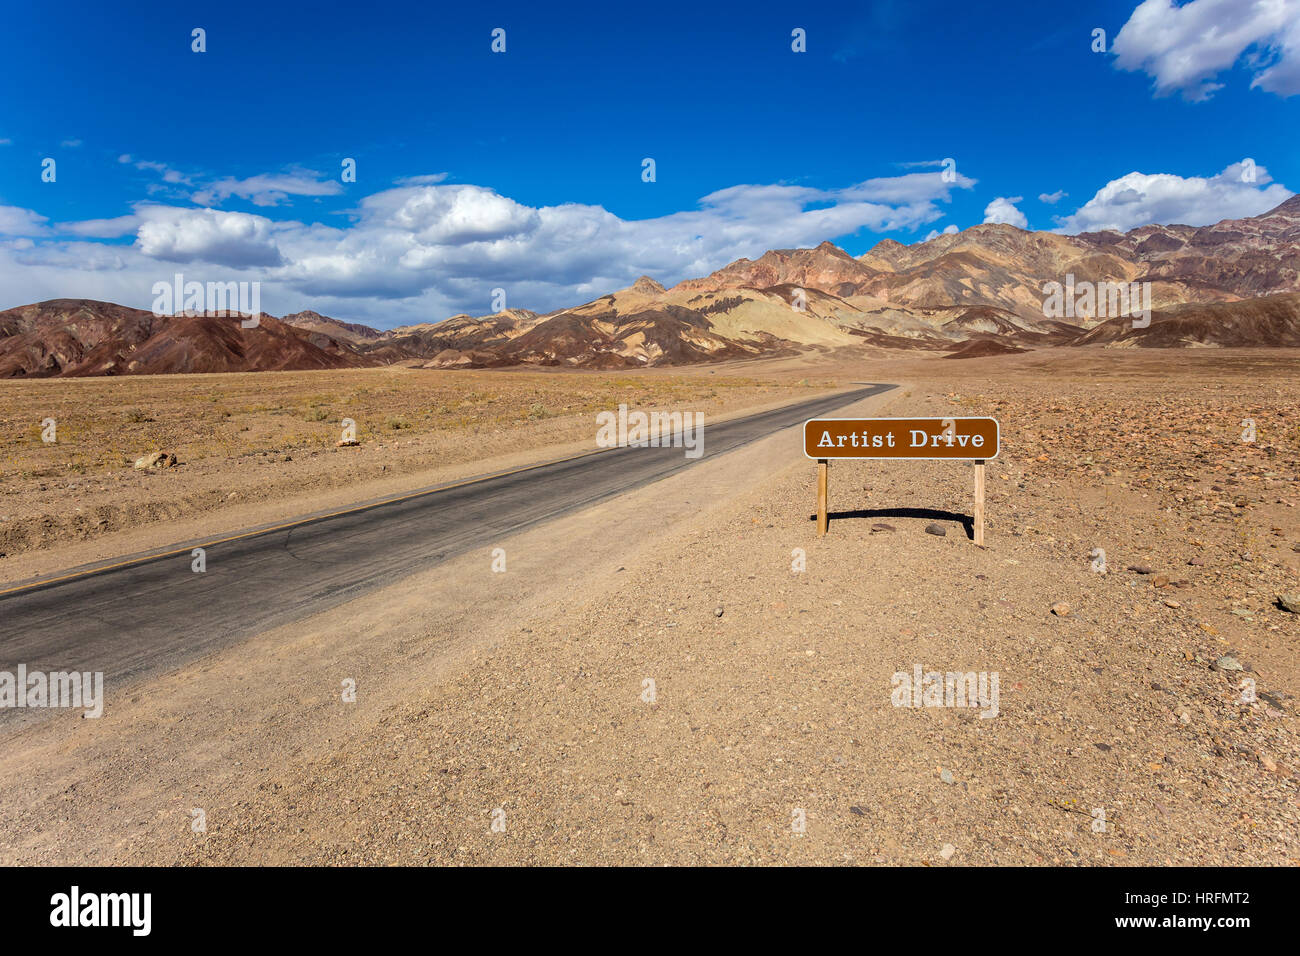 Panneau de bienvenue, une route panoramique, l'artiste, les Black Mountains, Death Valley National Park, Death Valley, California, United States, Amérique du Nord Banque D'Images